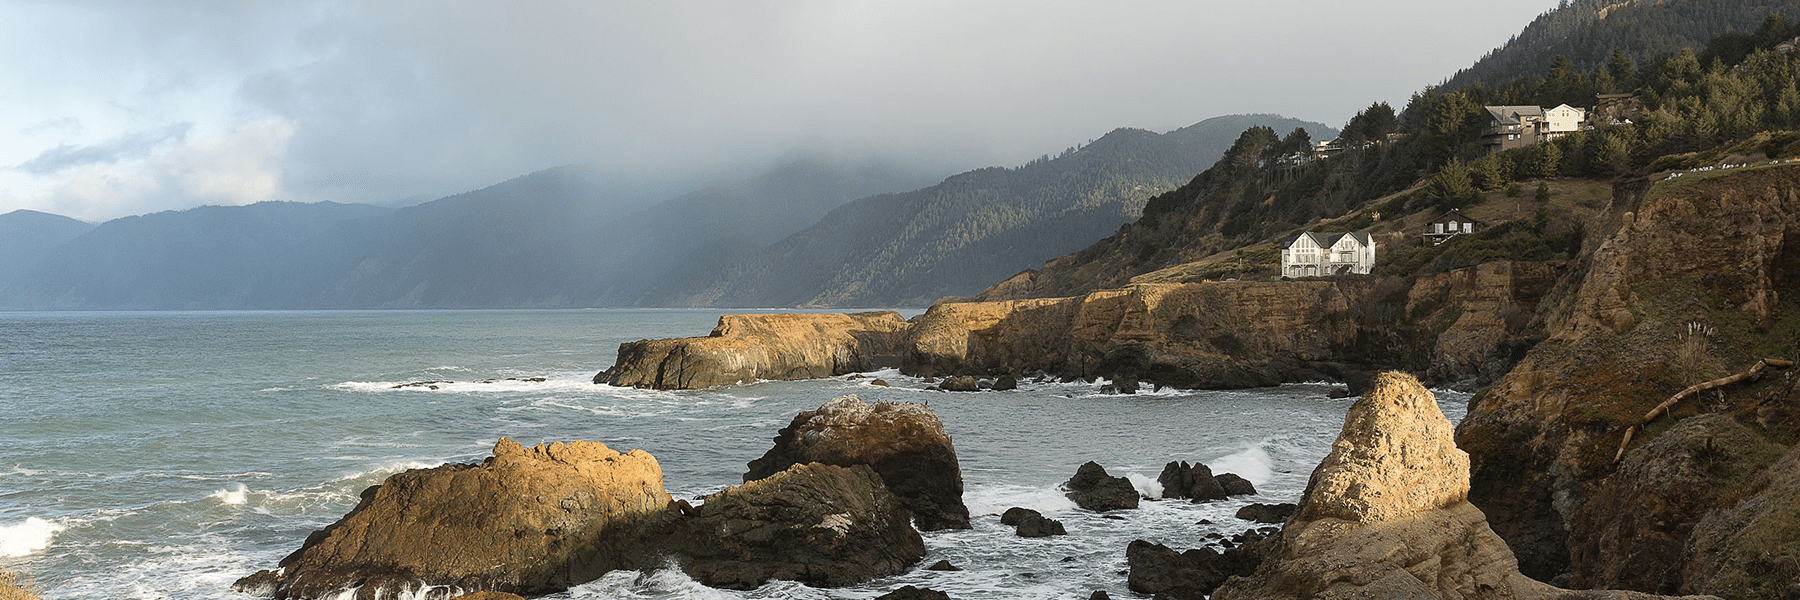 Fog over the California coastline